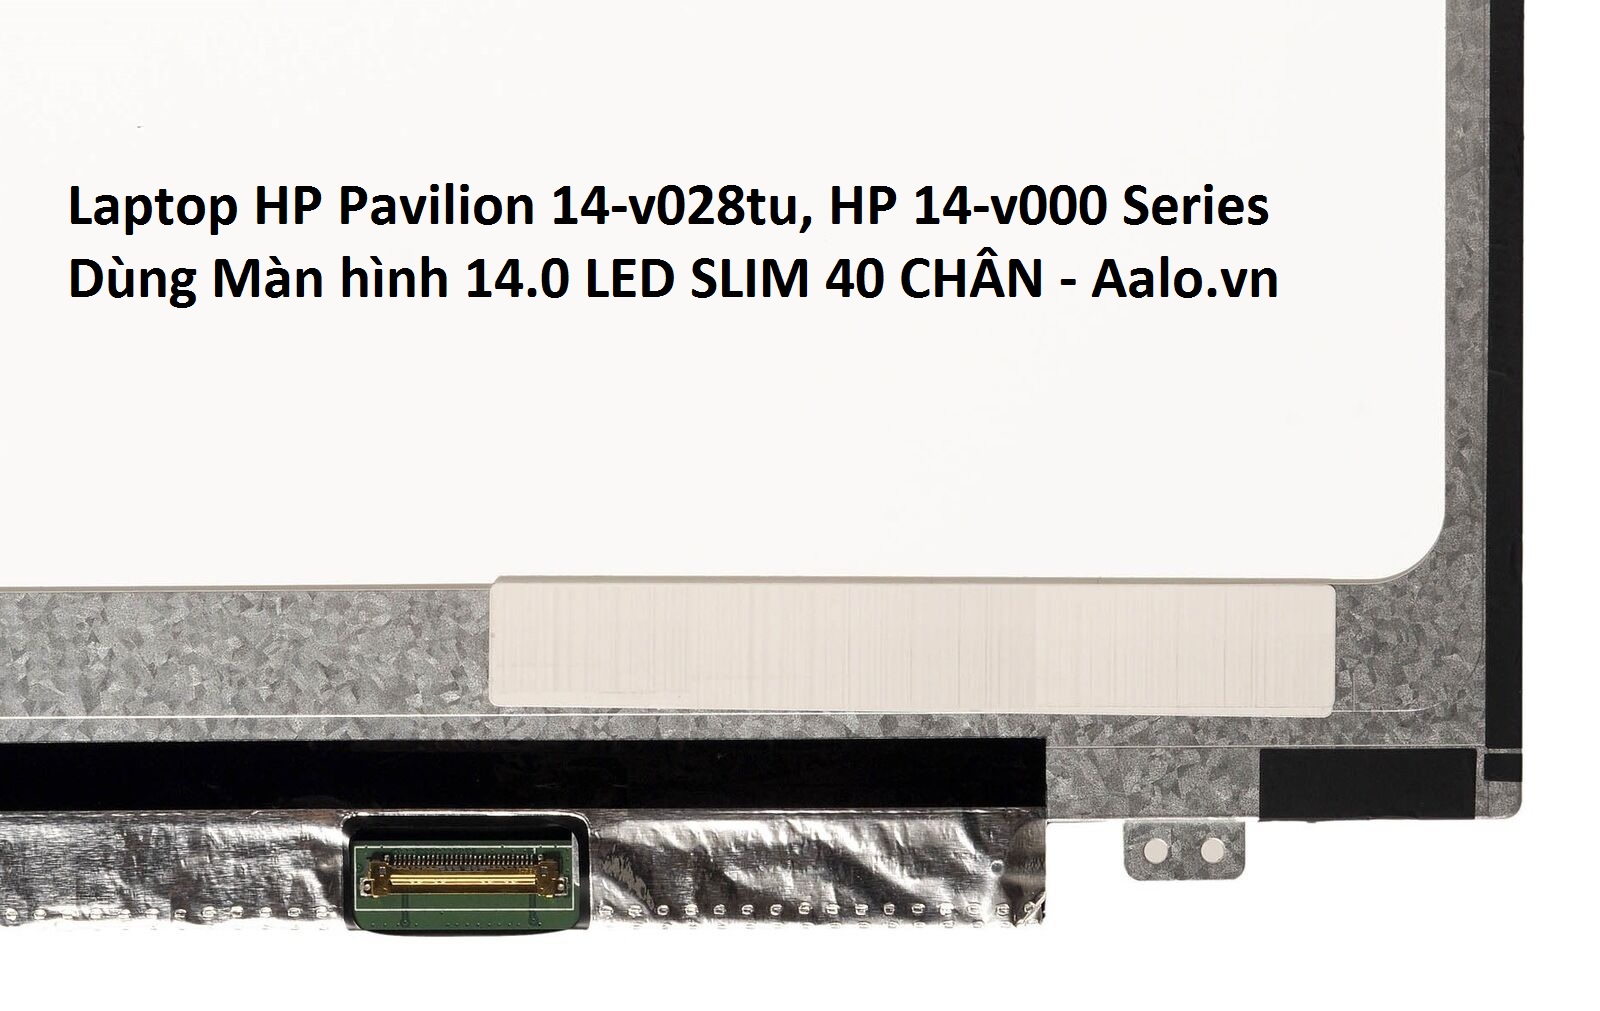 Màn hình Laptop HP Pavilion 14-v028tu, HP 14-v000 Series - Aalo.vn